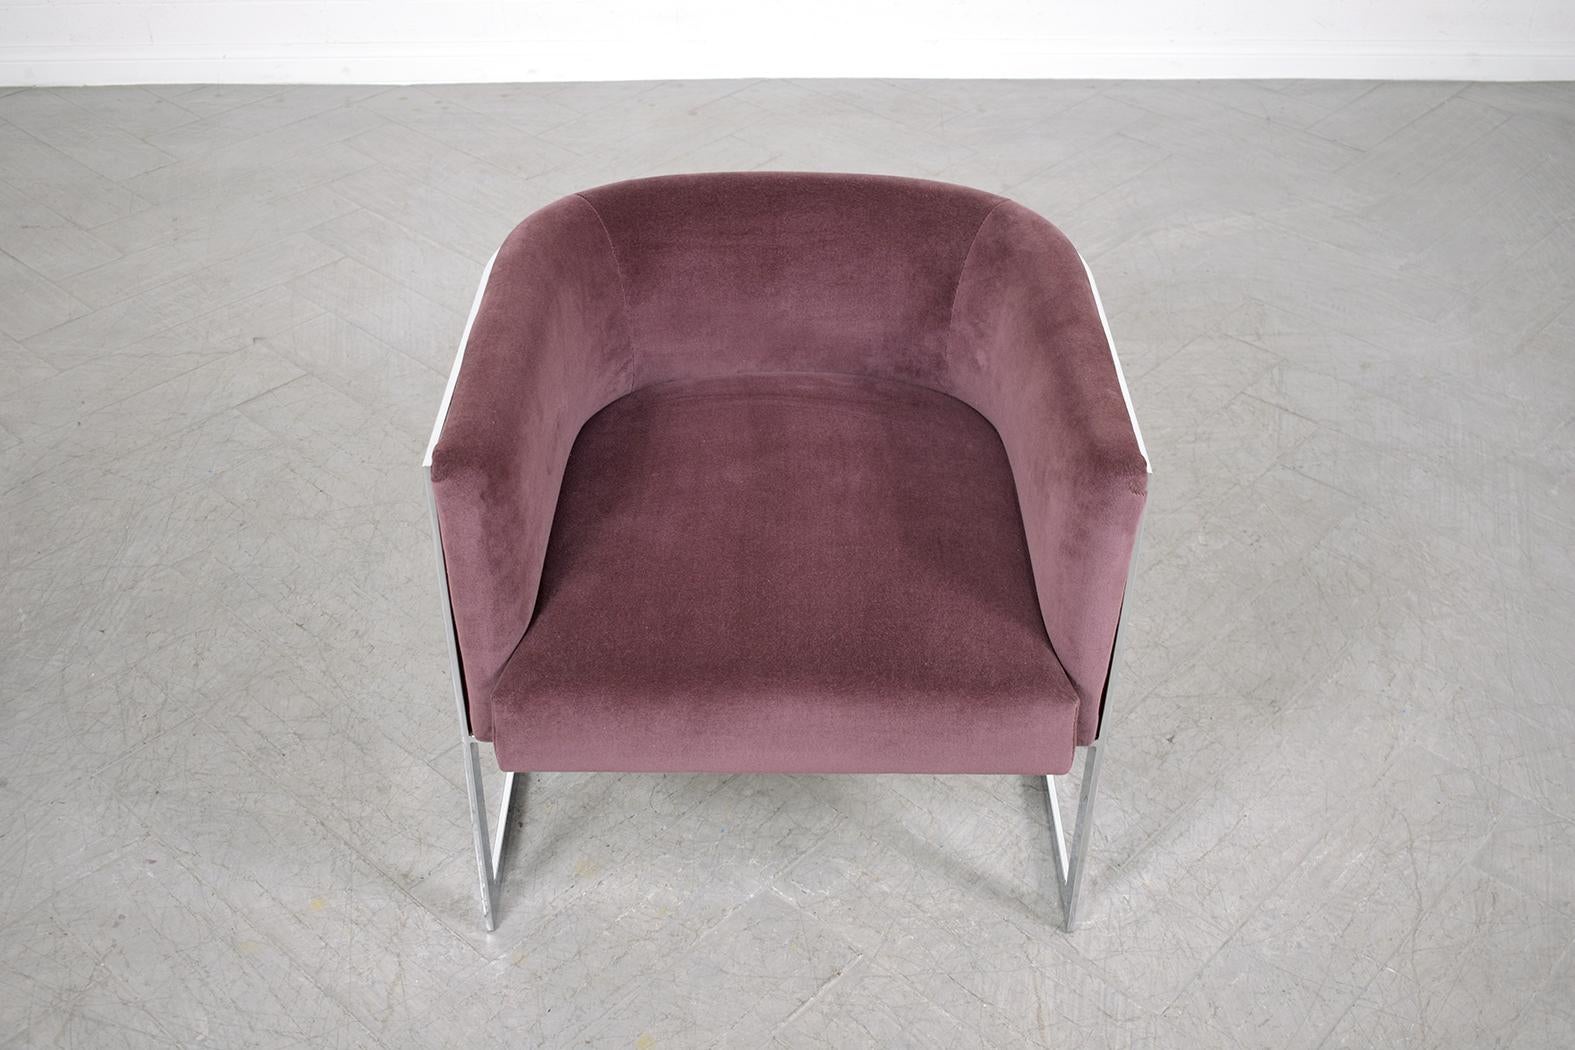 Reisen Sie zurück in die faszinierenden 1970er Jahre mit unserem exquisit handgefertigten Mid-Century Modern Lounge Chair. Als Zeugnis sorgfältiger Handwerkskunst strahlt dieses Vintage-Schmuckstück aus einer Mischung aus robustem Holz und glattem